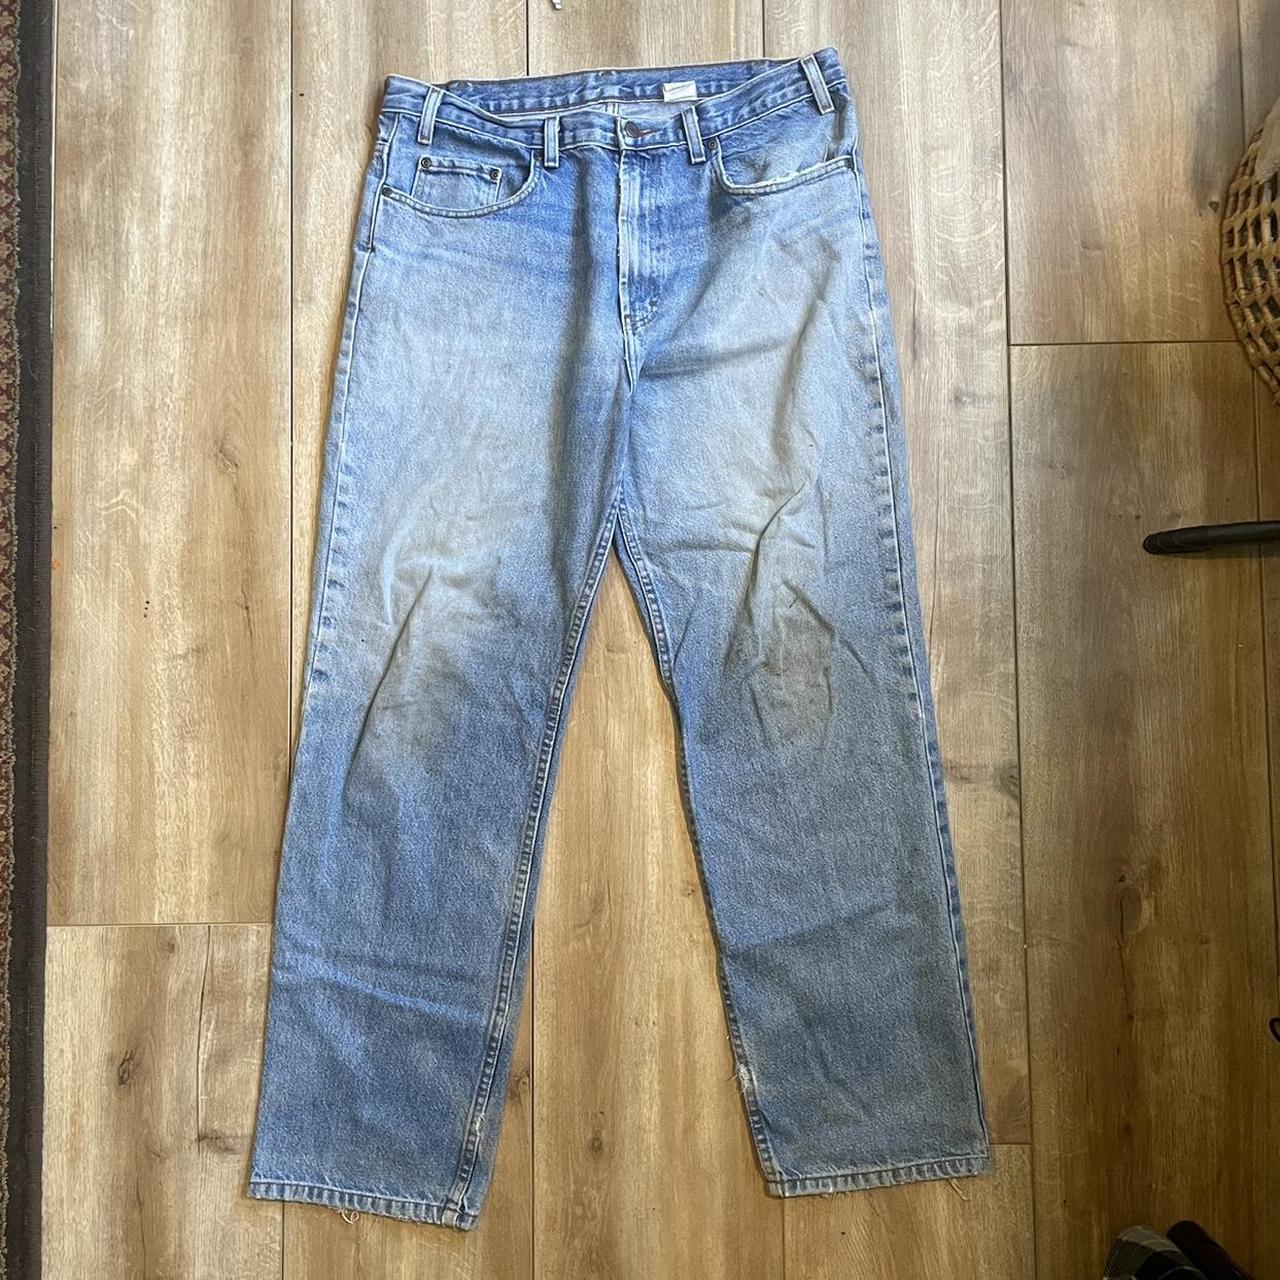 Kirkland denim jeans 36x 32 - Depop